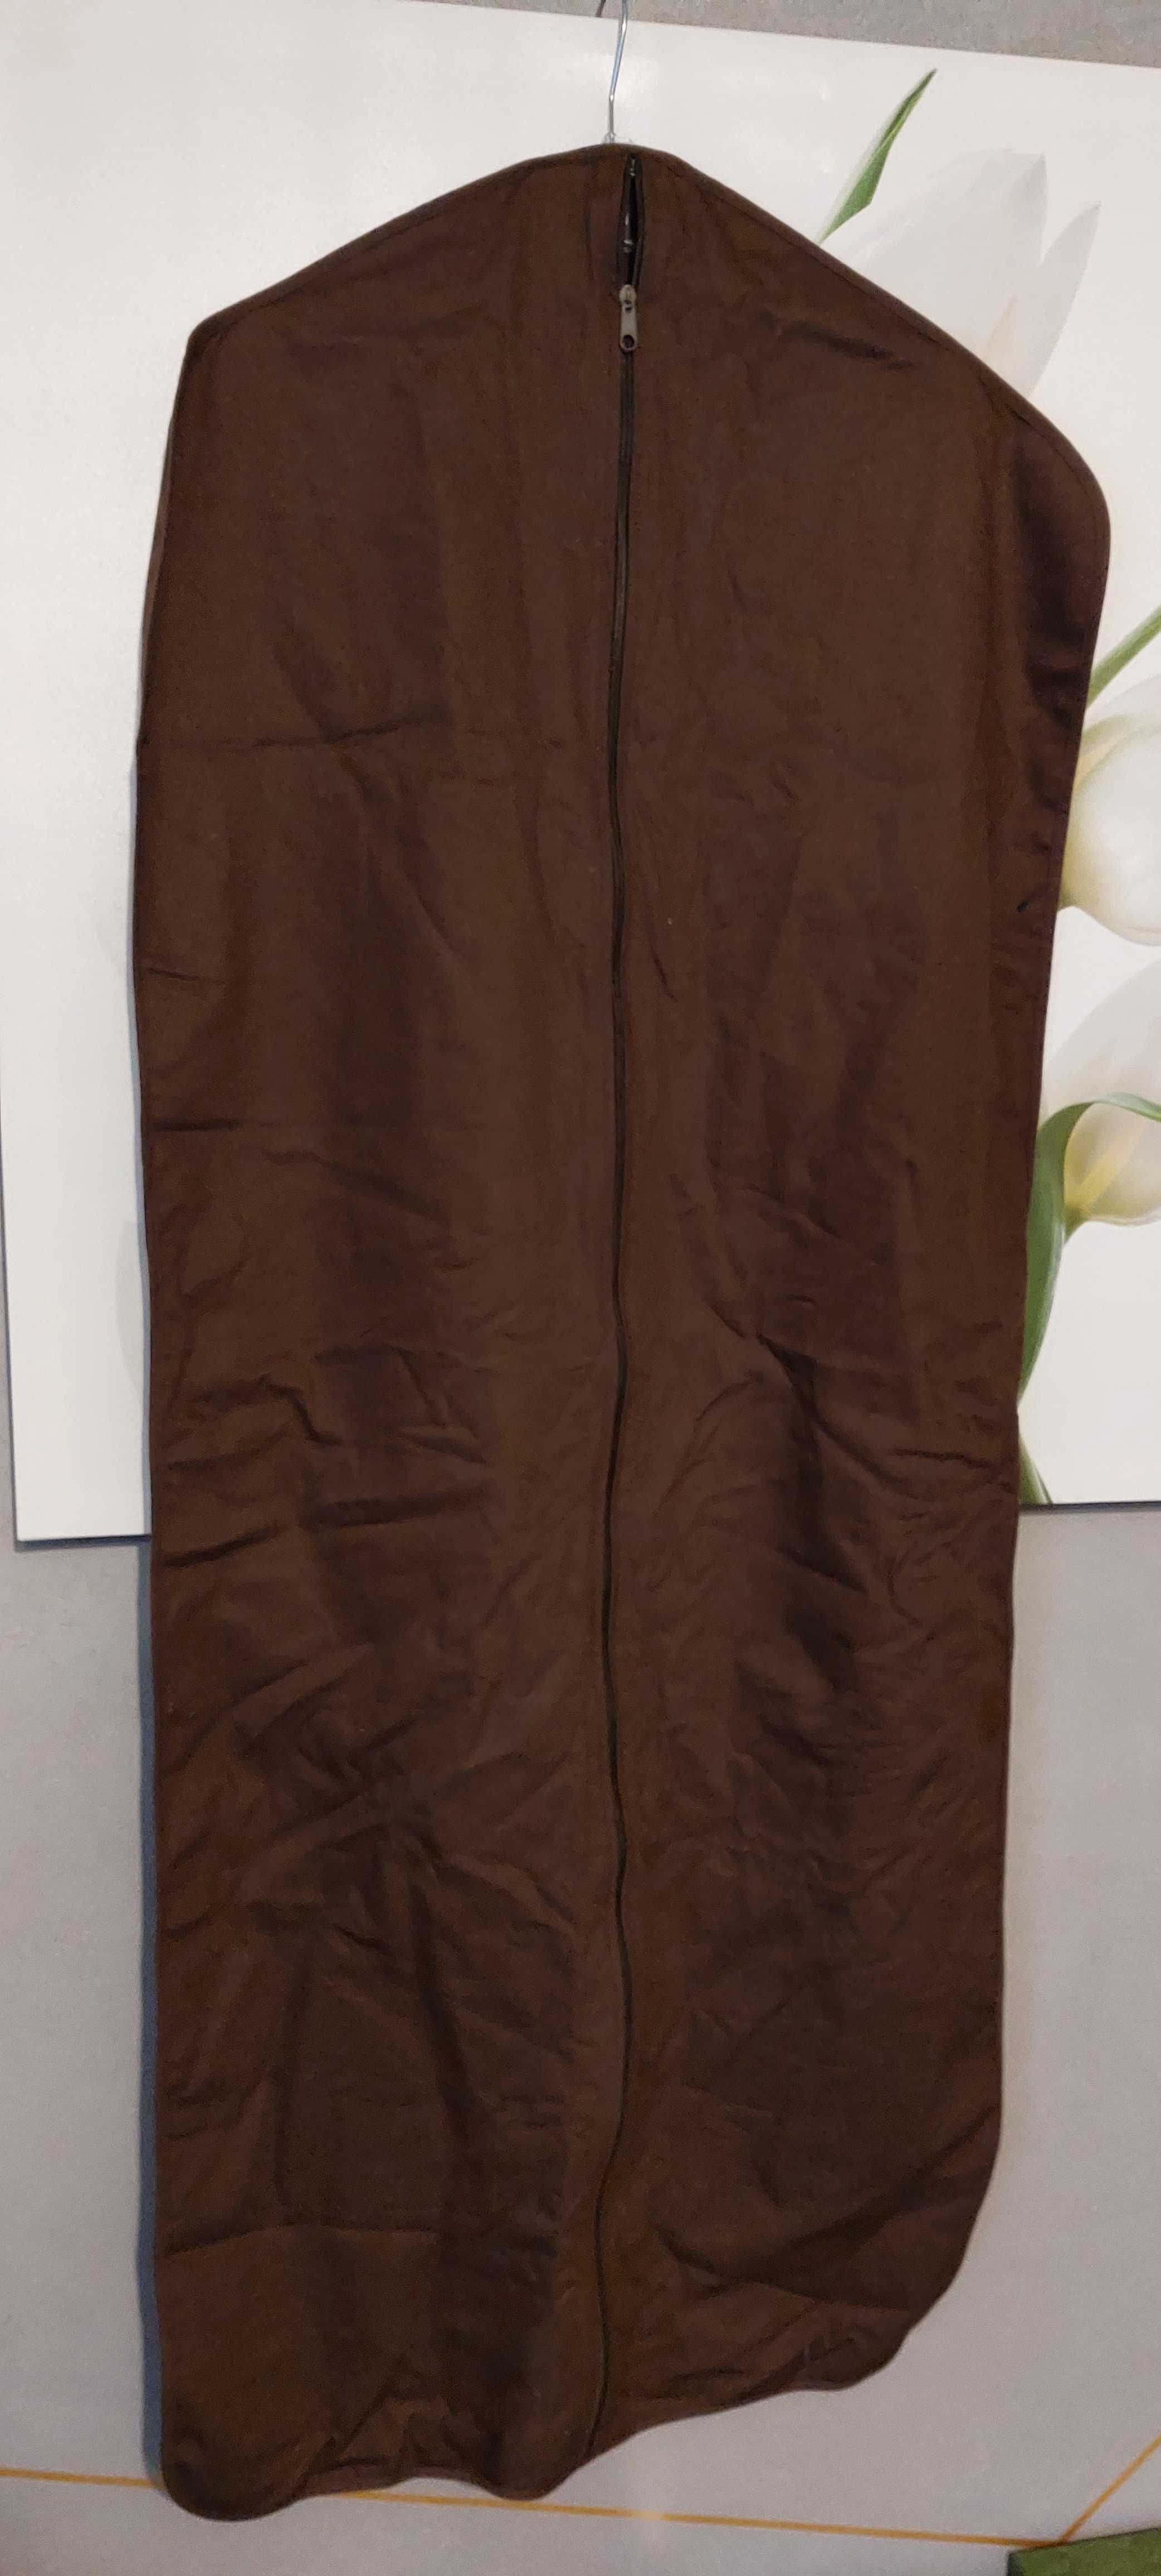 Pokrowiec na ubrania LOUIS VUITTON-brązowy, oryginalny